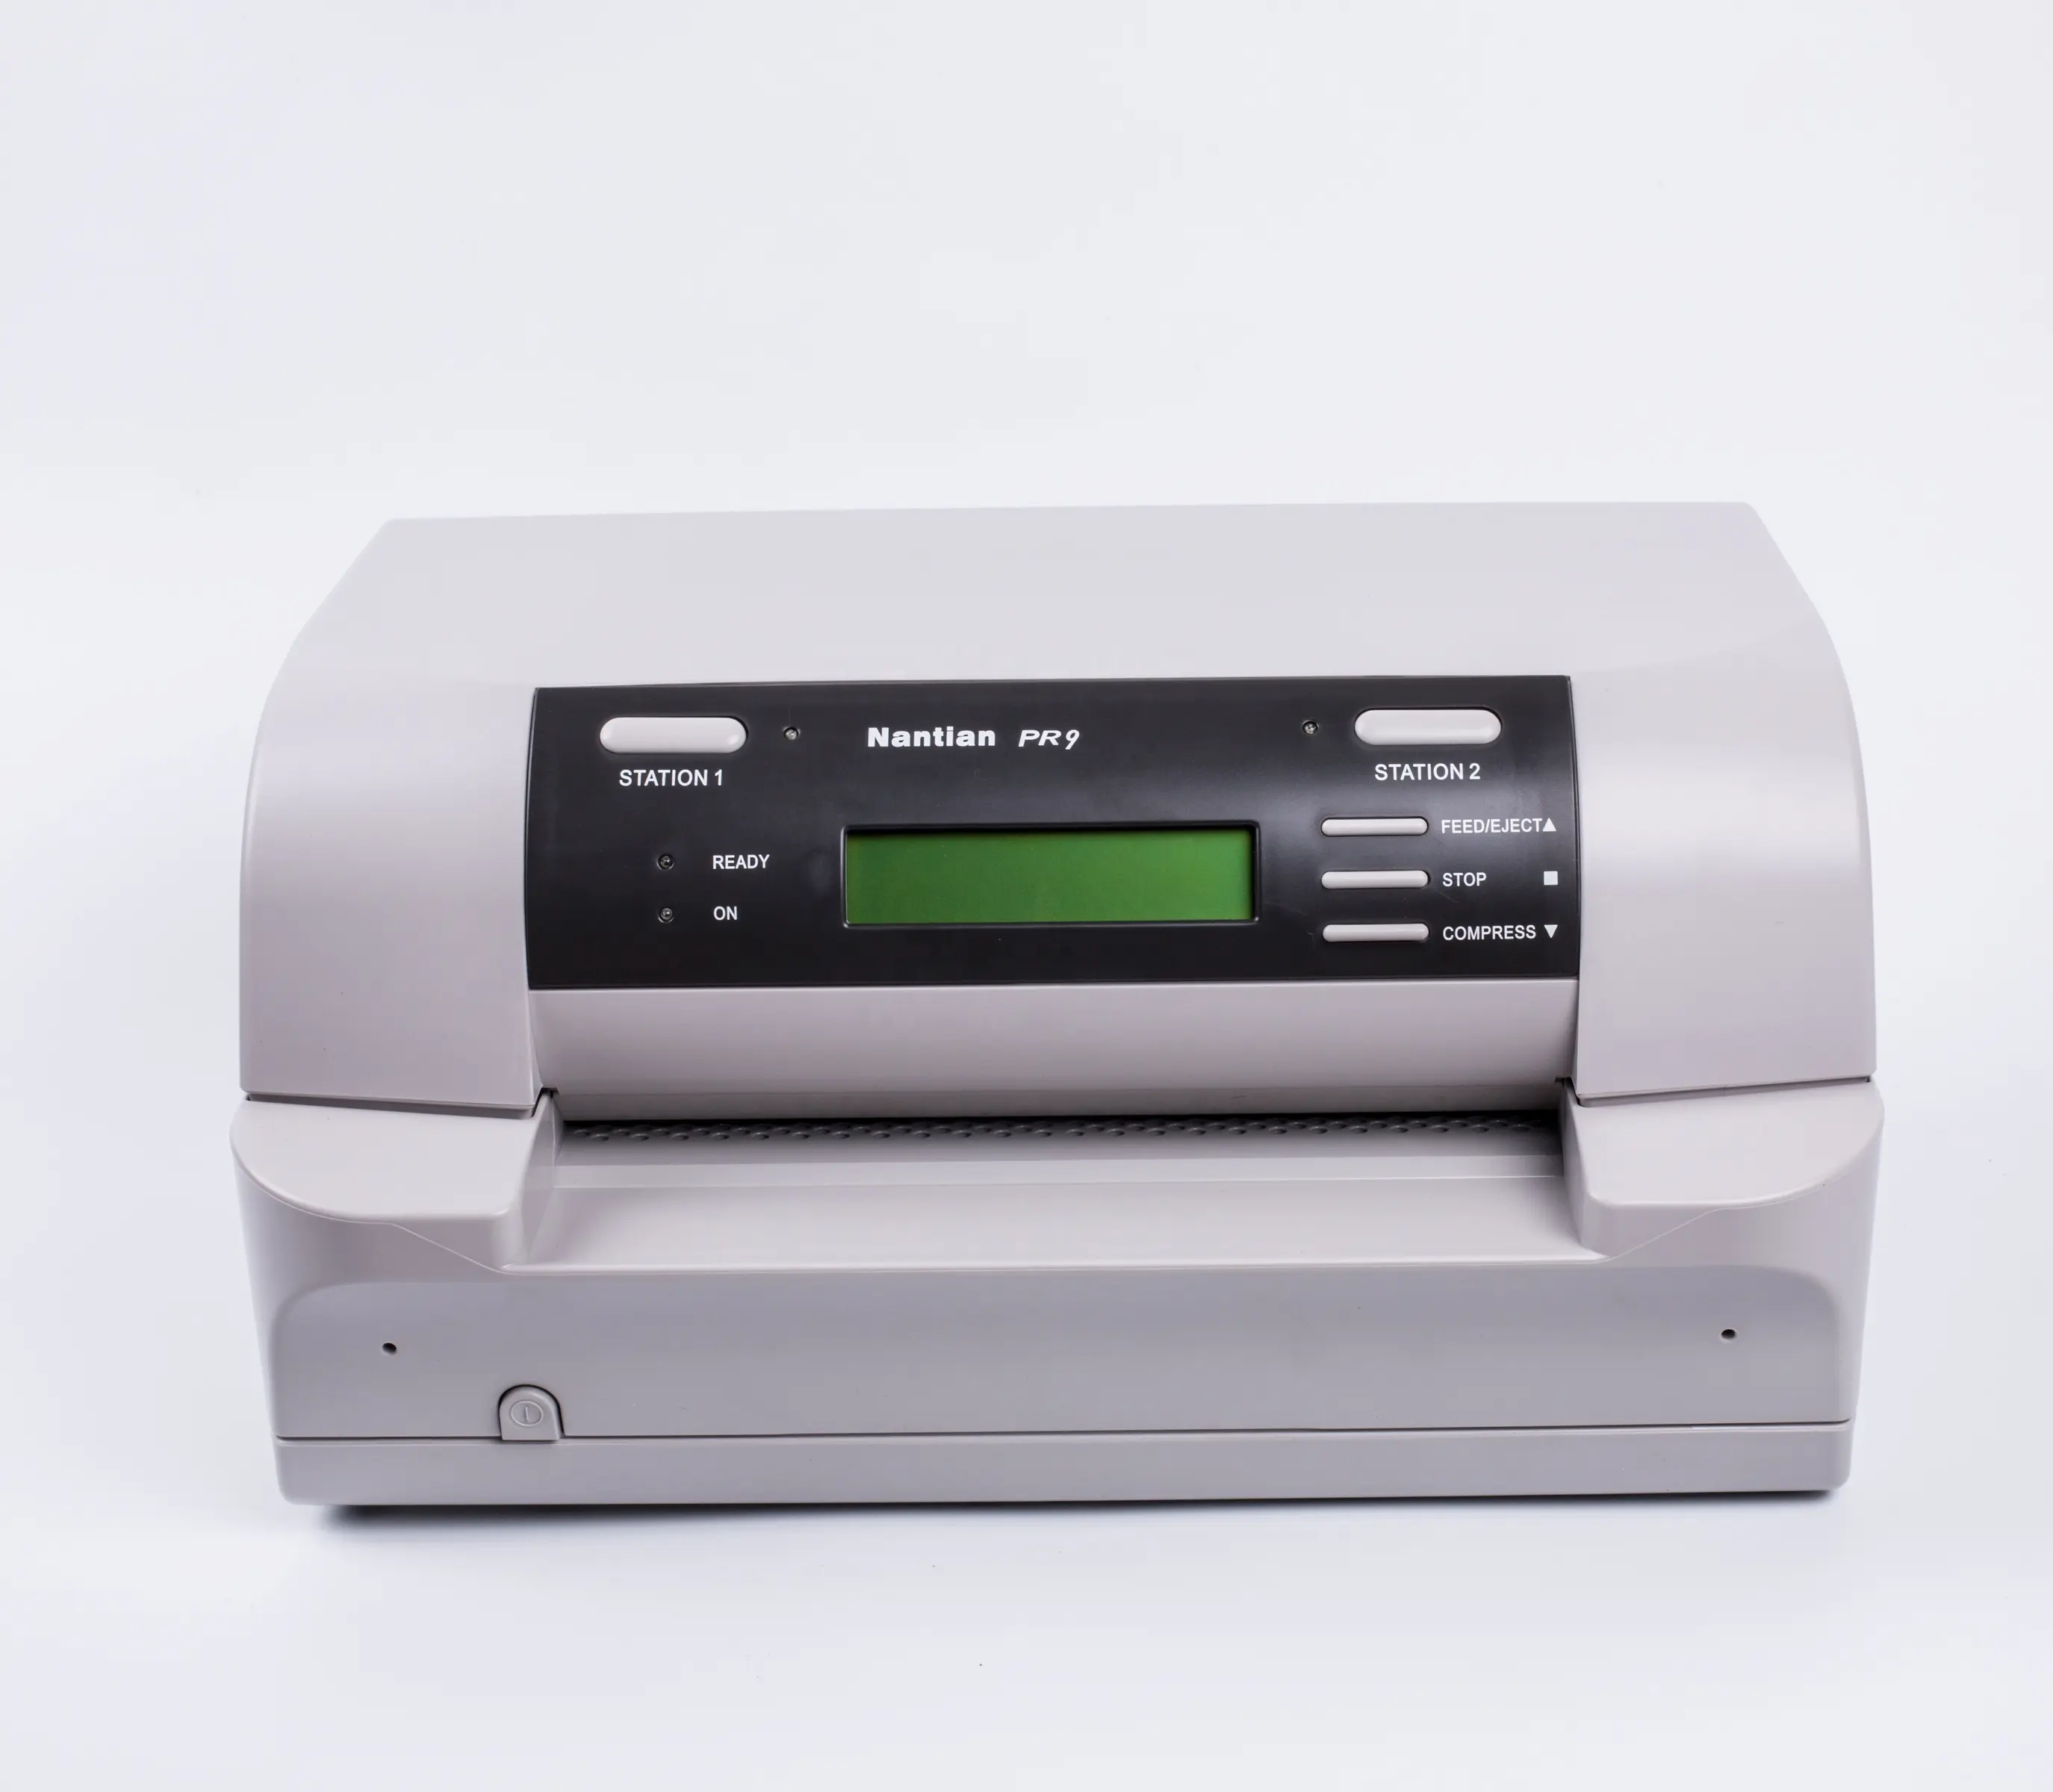 Принтер для паспорта Nantian PR9, точечный матричный принтер, оптовая продажа по заводской цене